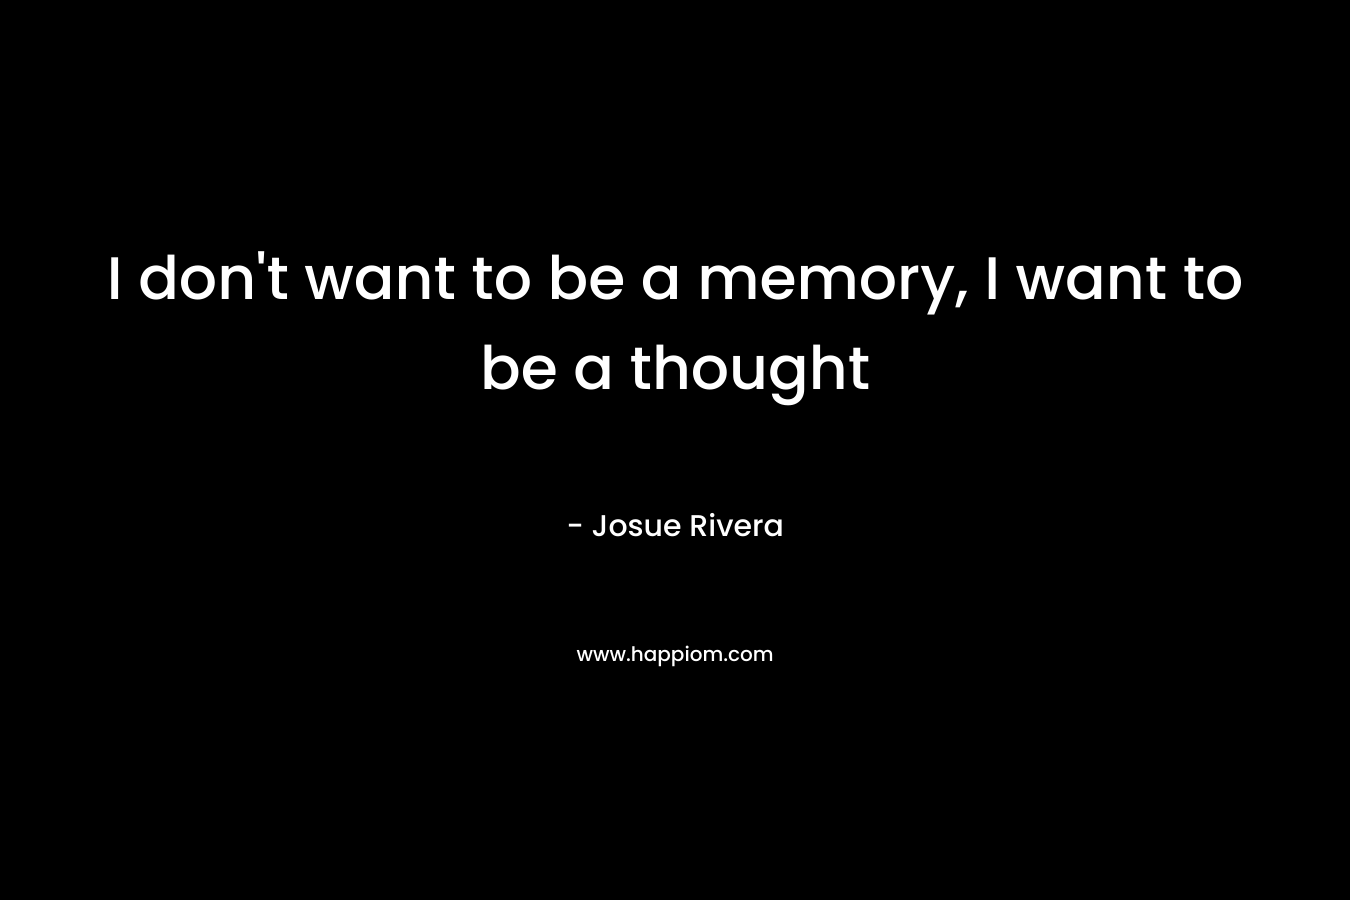 I don't want to be a memory, I want to be a thought